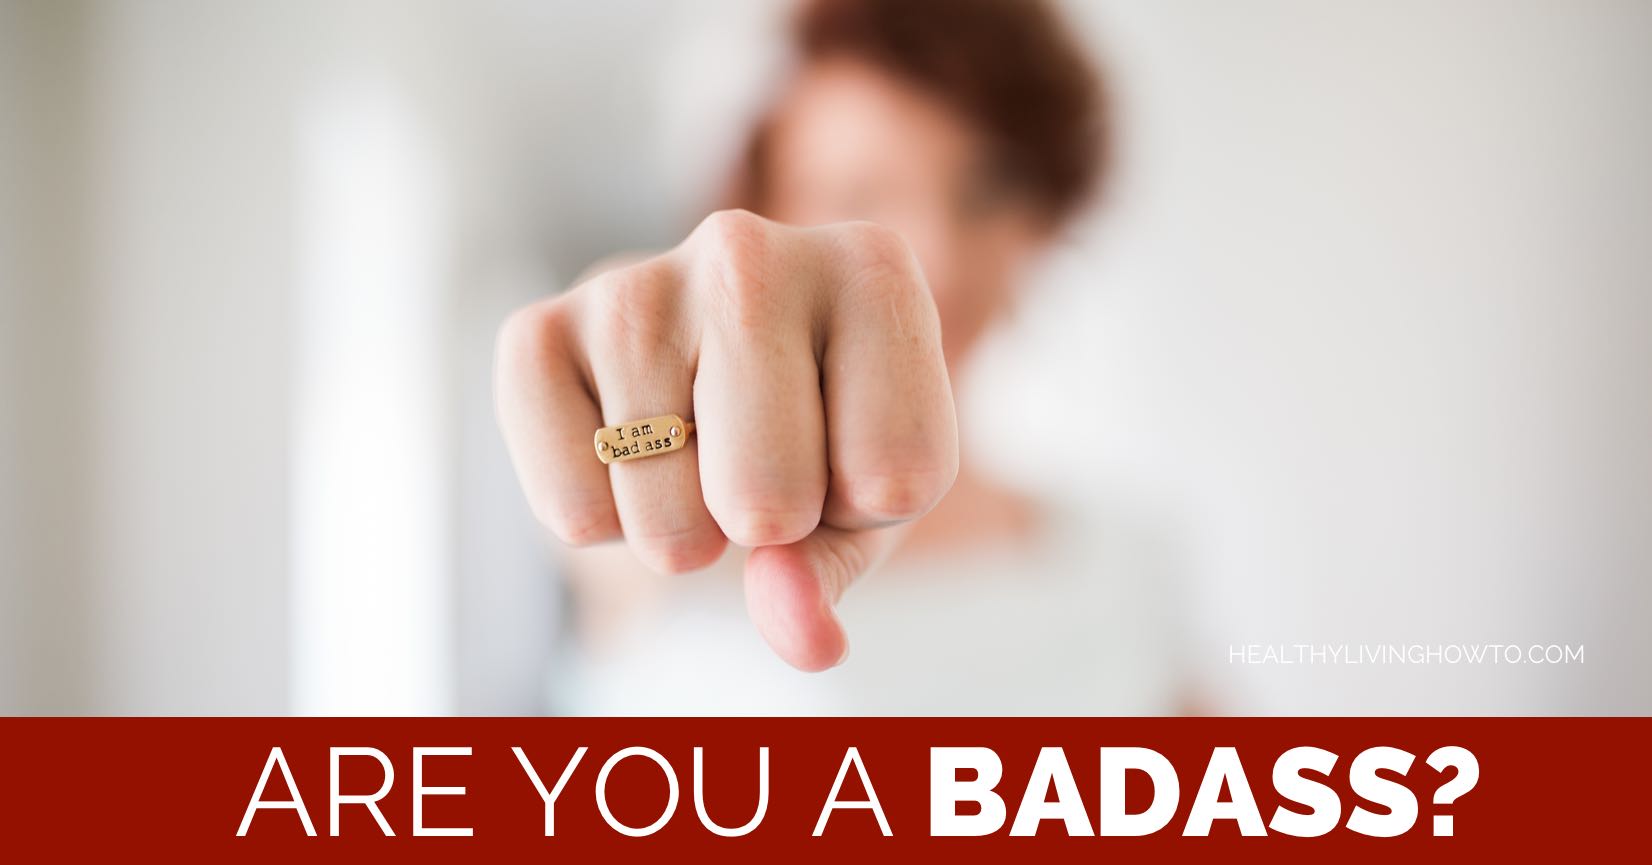 Are you a badass? | healthylivinghowto.com blog